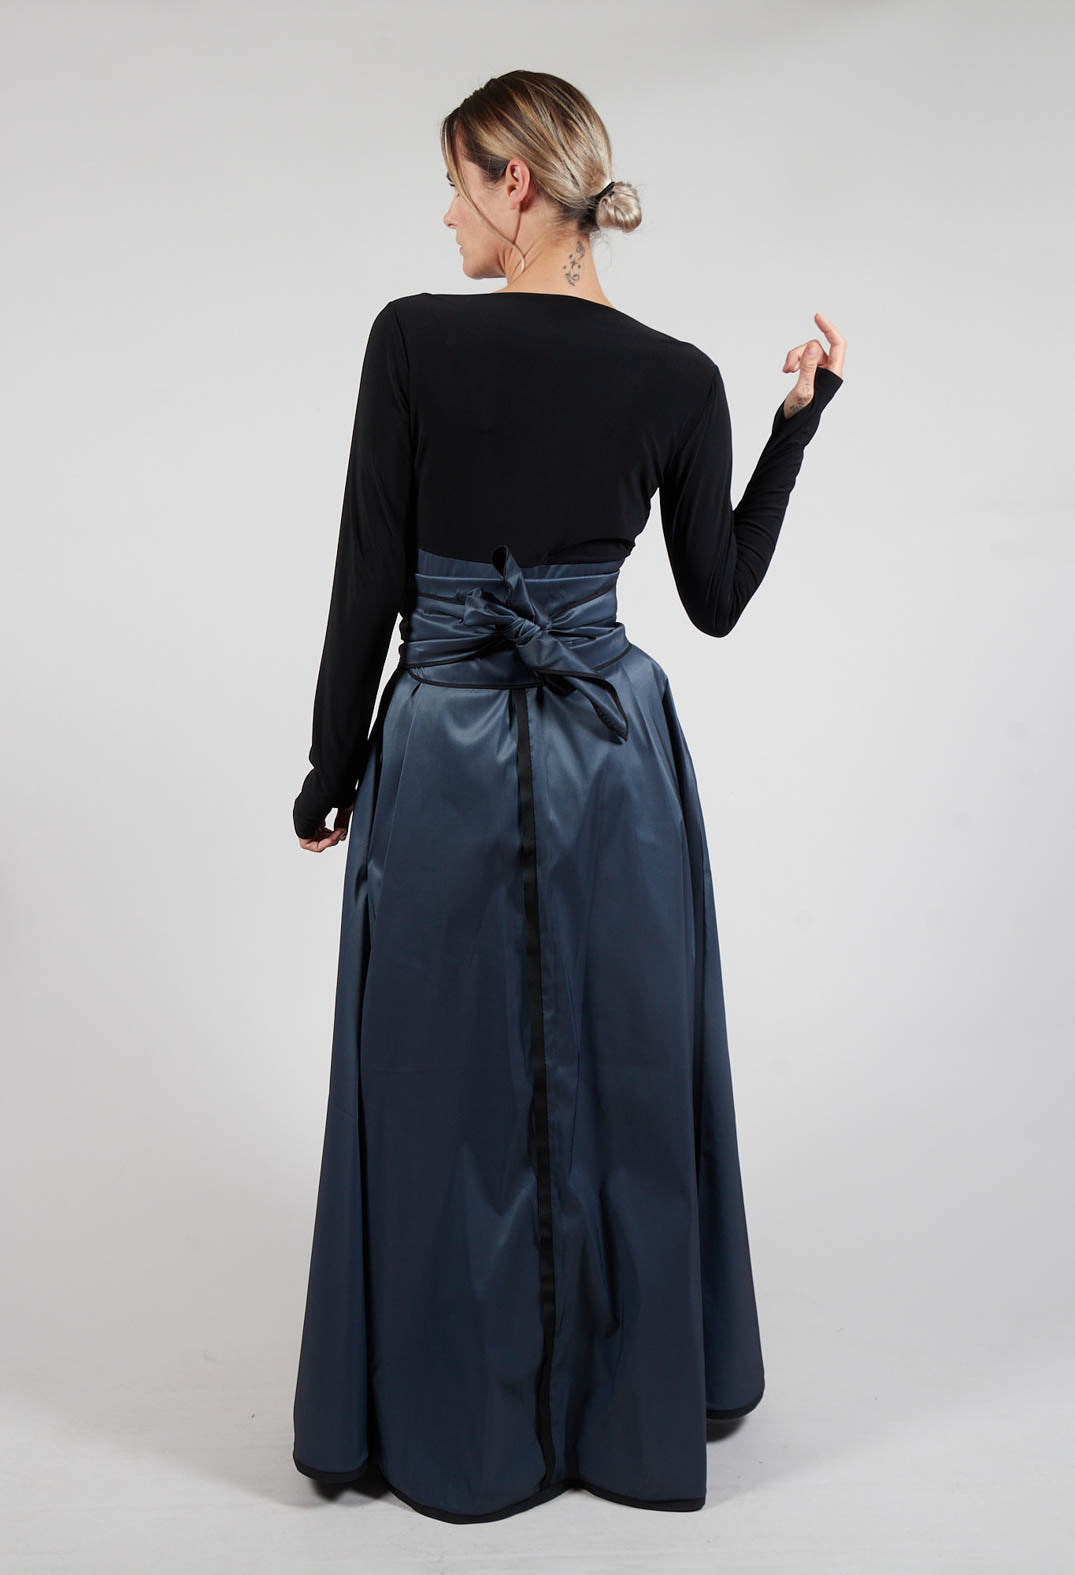 Dress Kivi2 In Black Grey Blue